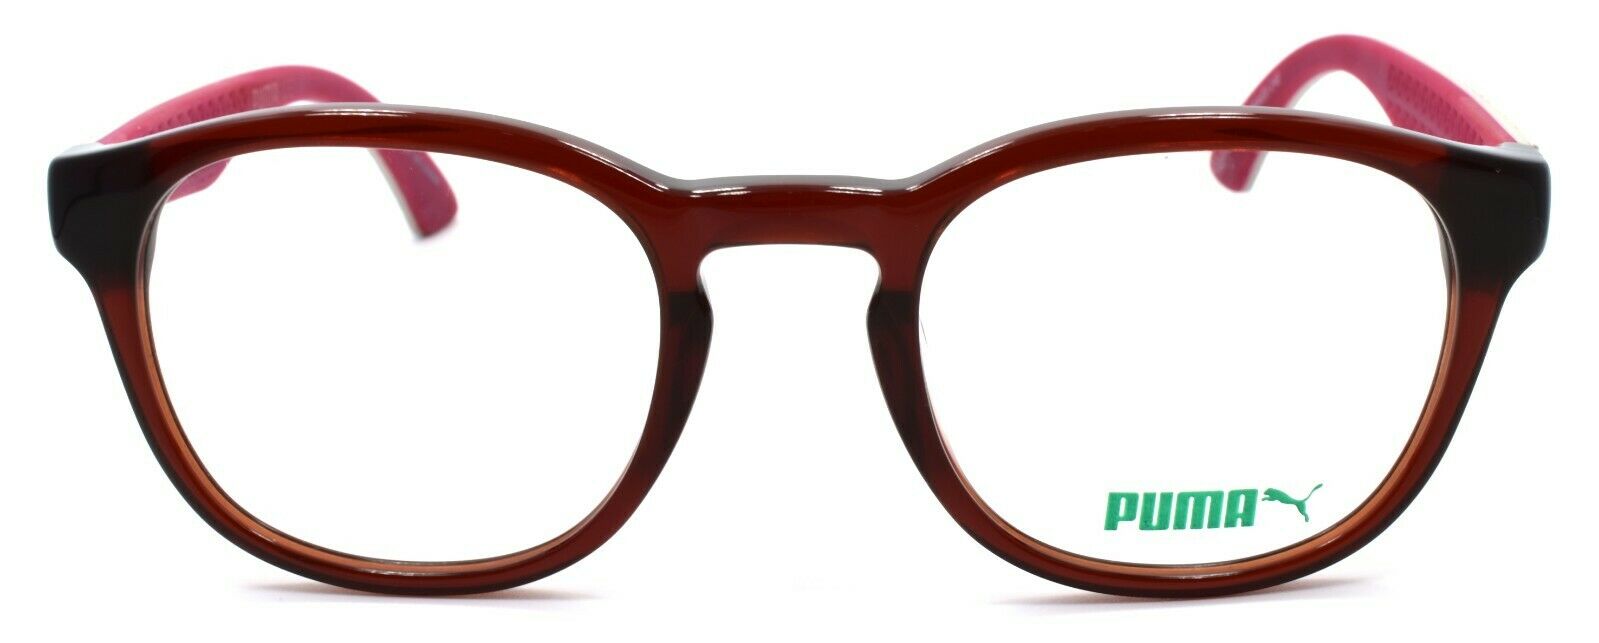 2-PUMA PU0043O 006 Unisex Eyeglasses Frames 49-22-140 Red & Ivory w/ Suede-889652016603-IKSpecs